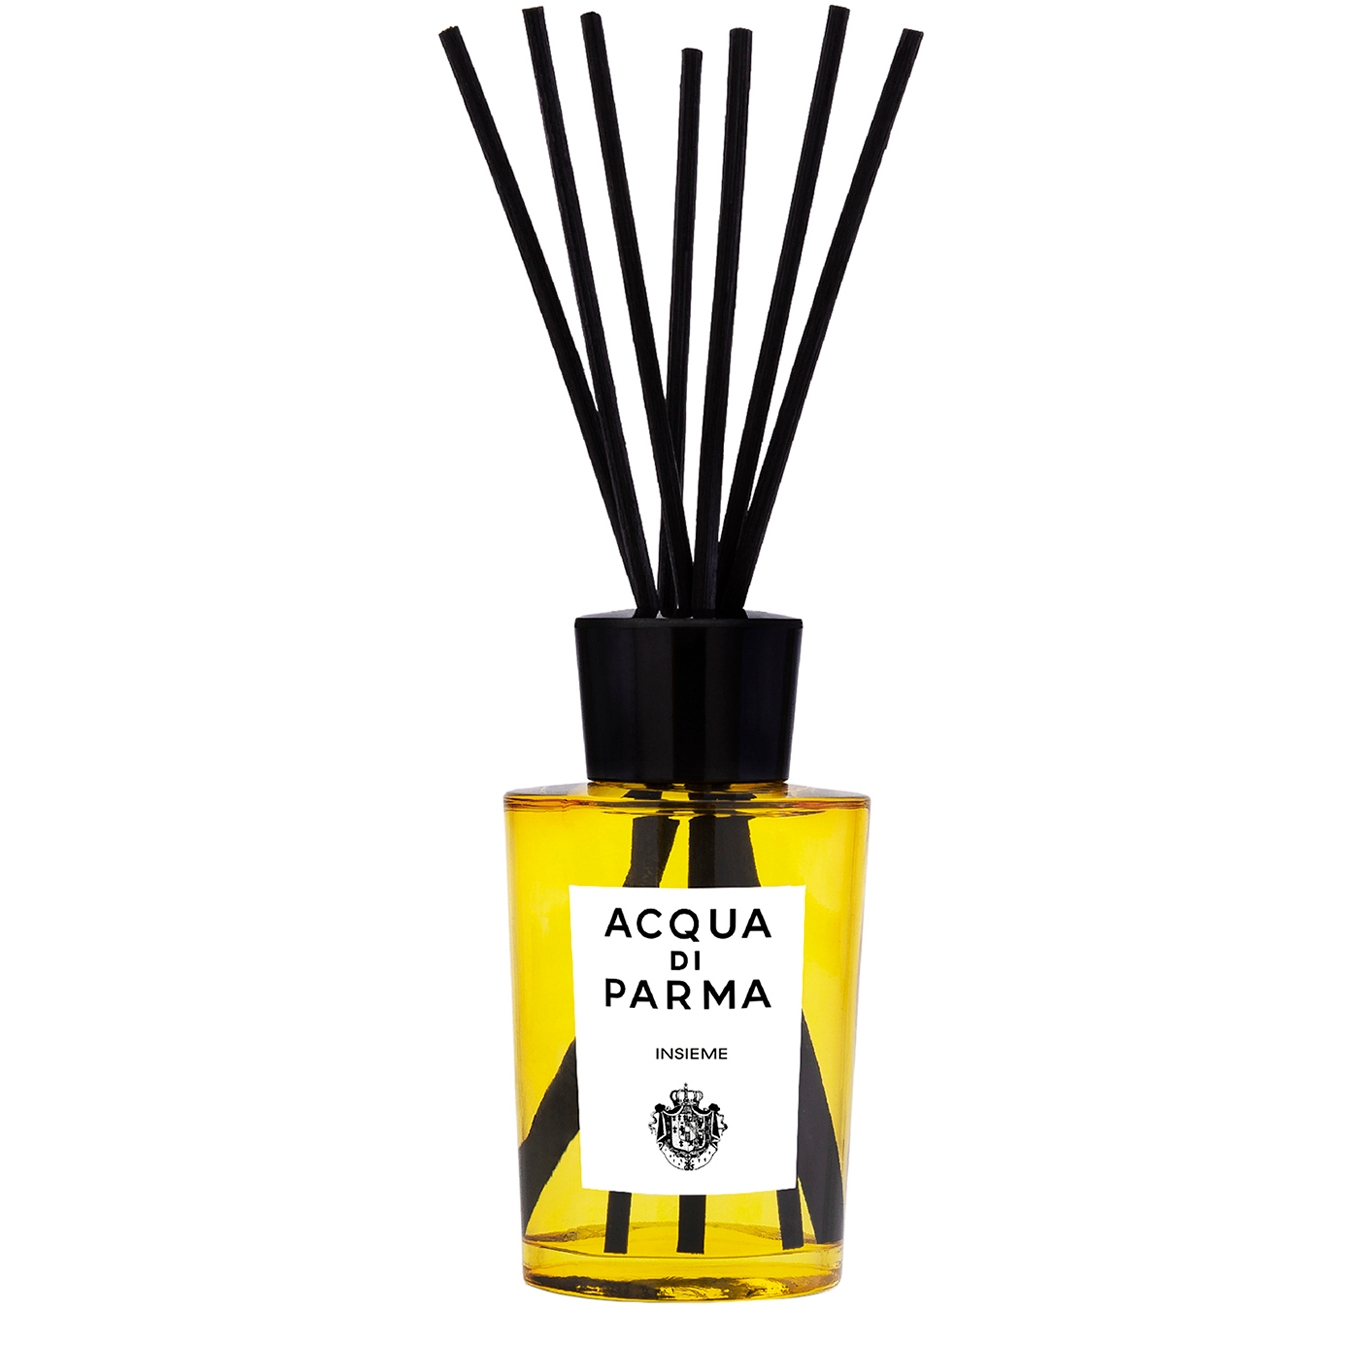 Acqua Di Parma Insieme Room Diffuser 180ml In Yellow